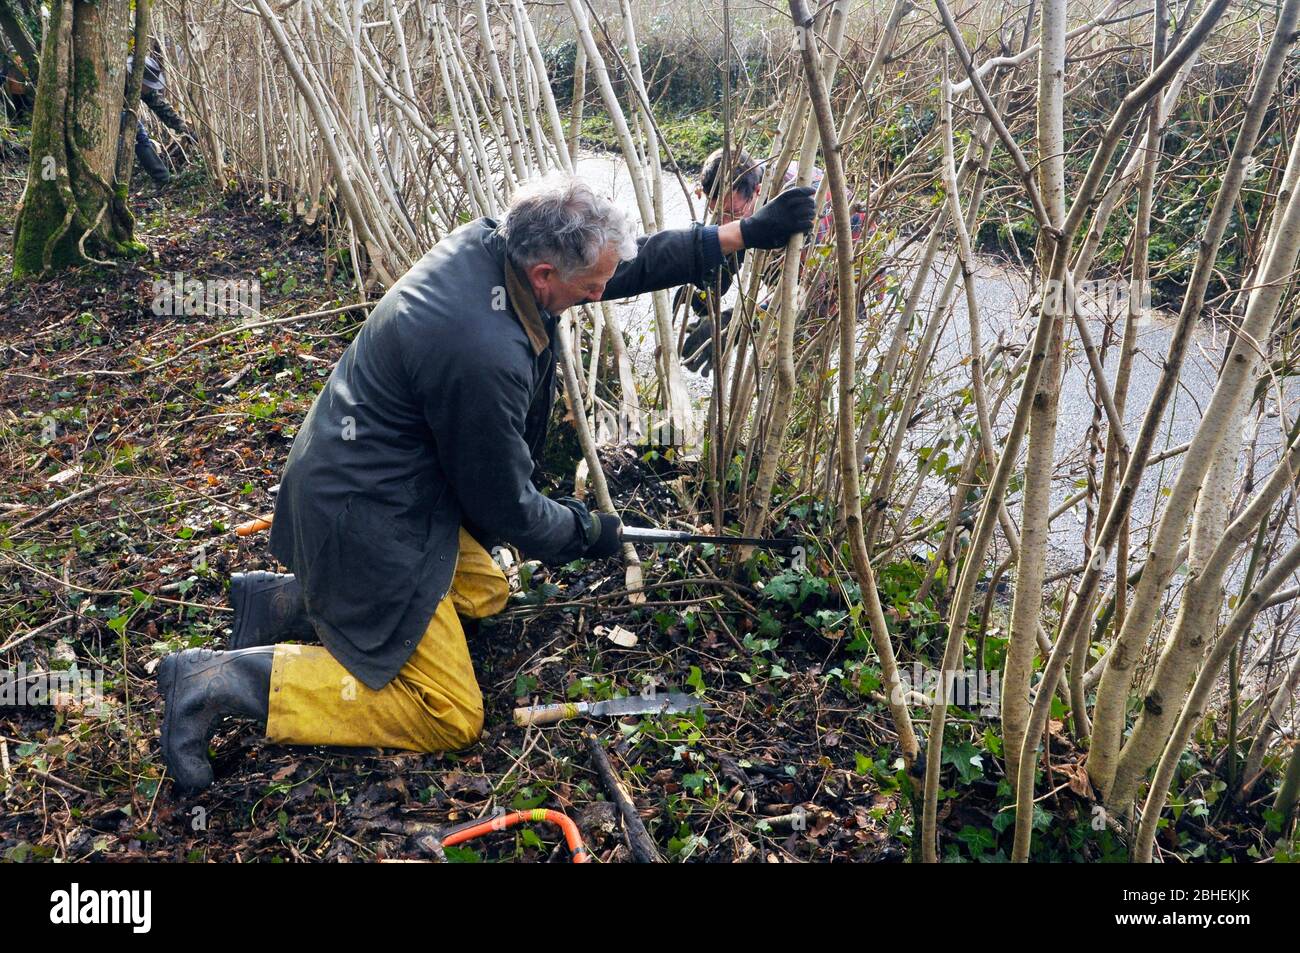 Voluntario de conservación de la naturaleza usando una podadora para poner una cobertura en el borde de una reserva de madera Somerset Wildlife Trust en Somerset. Foto de stock